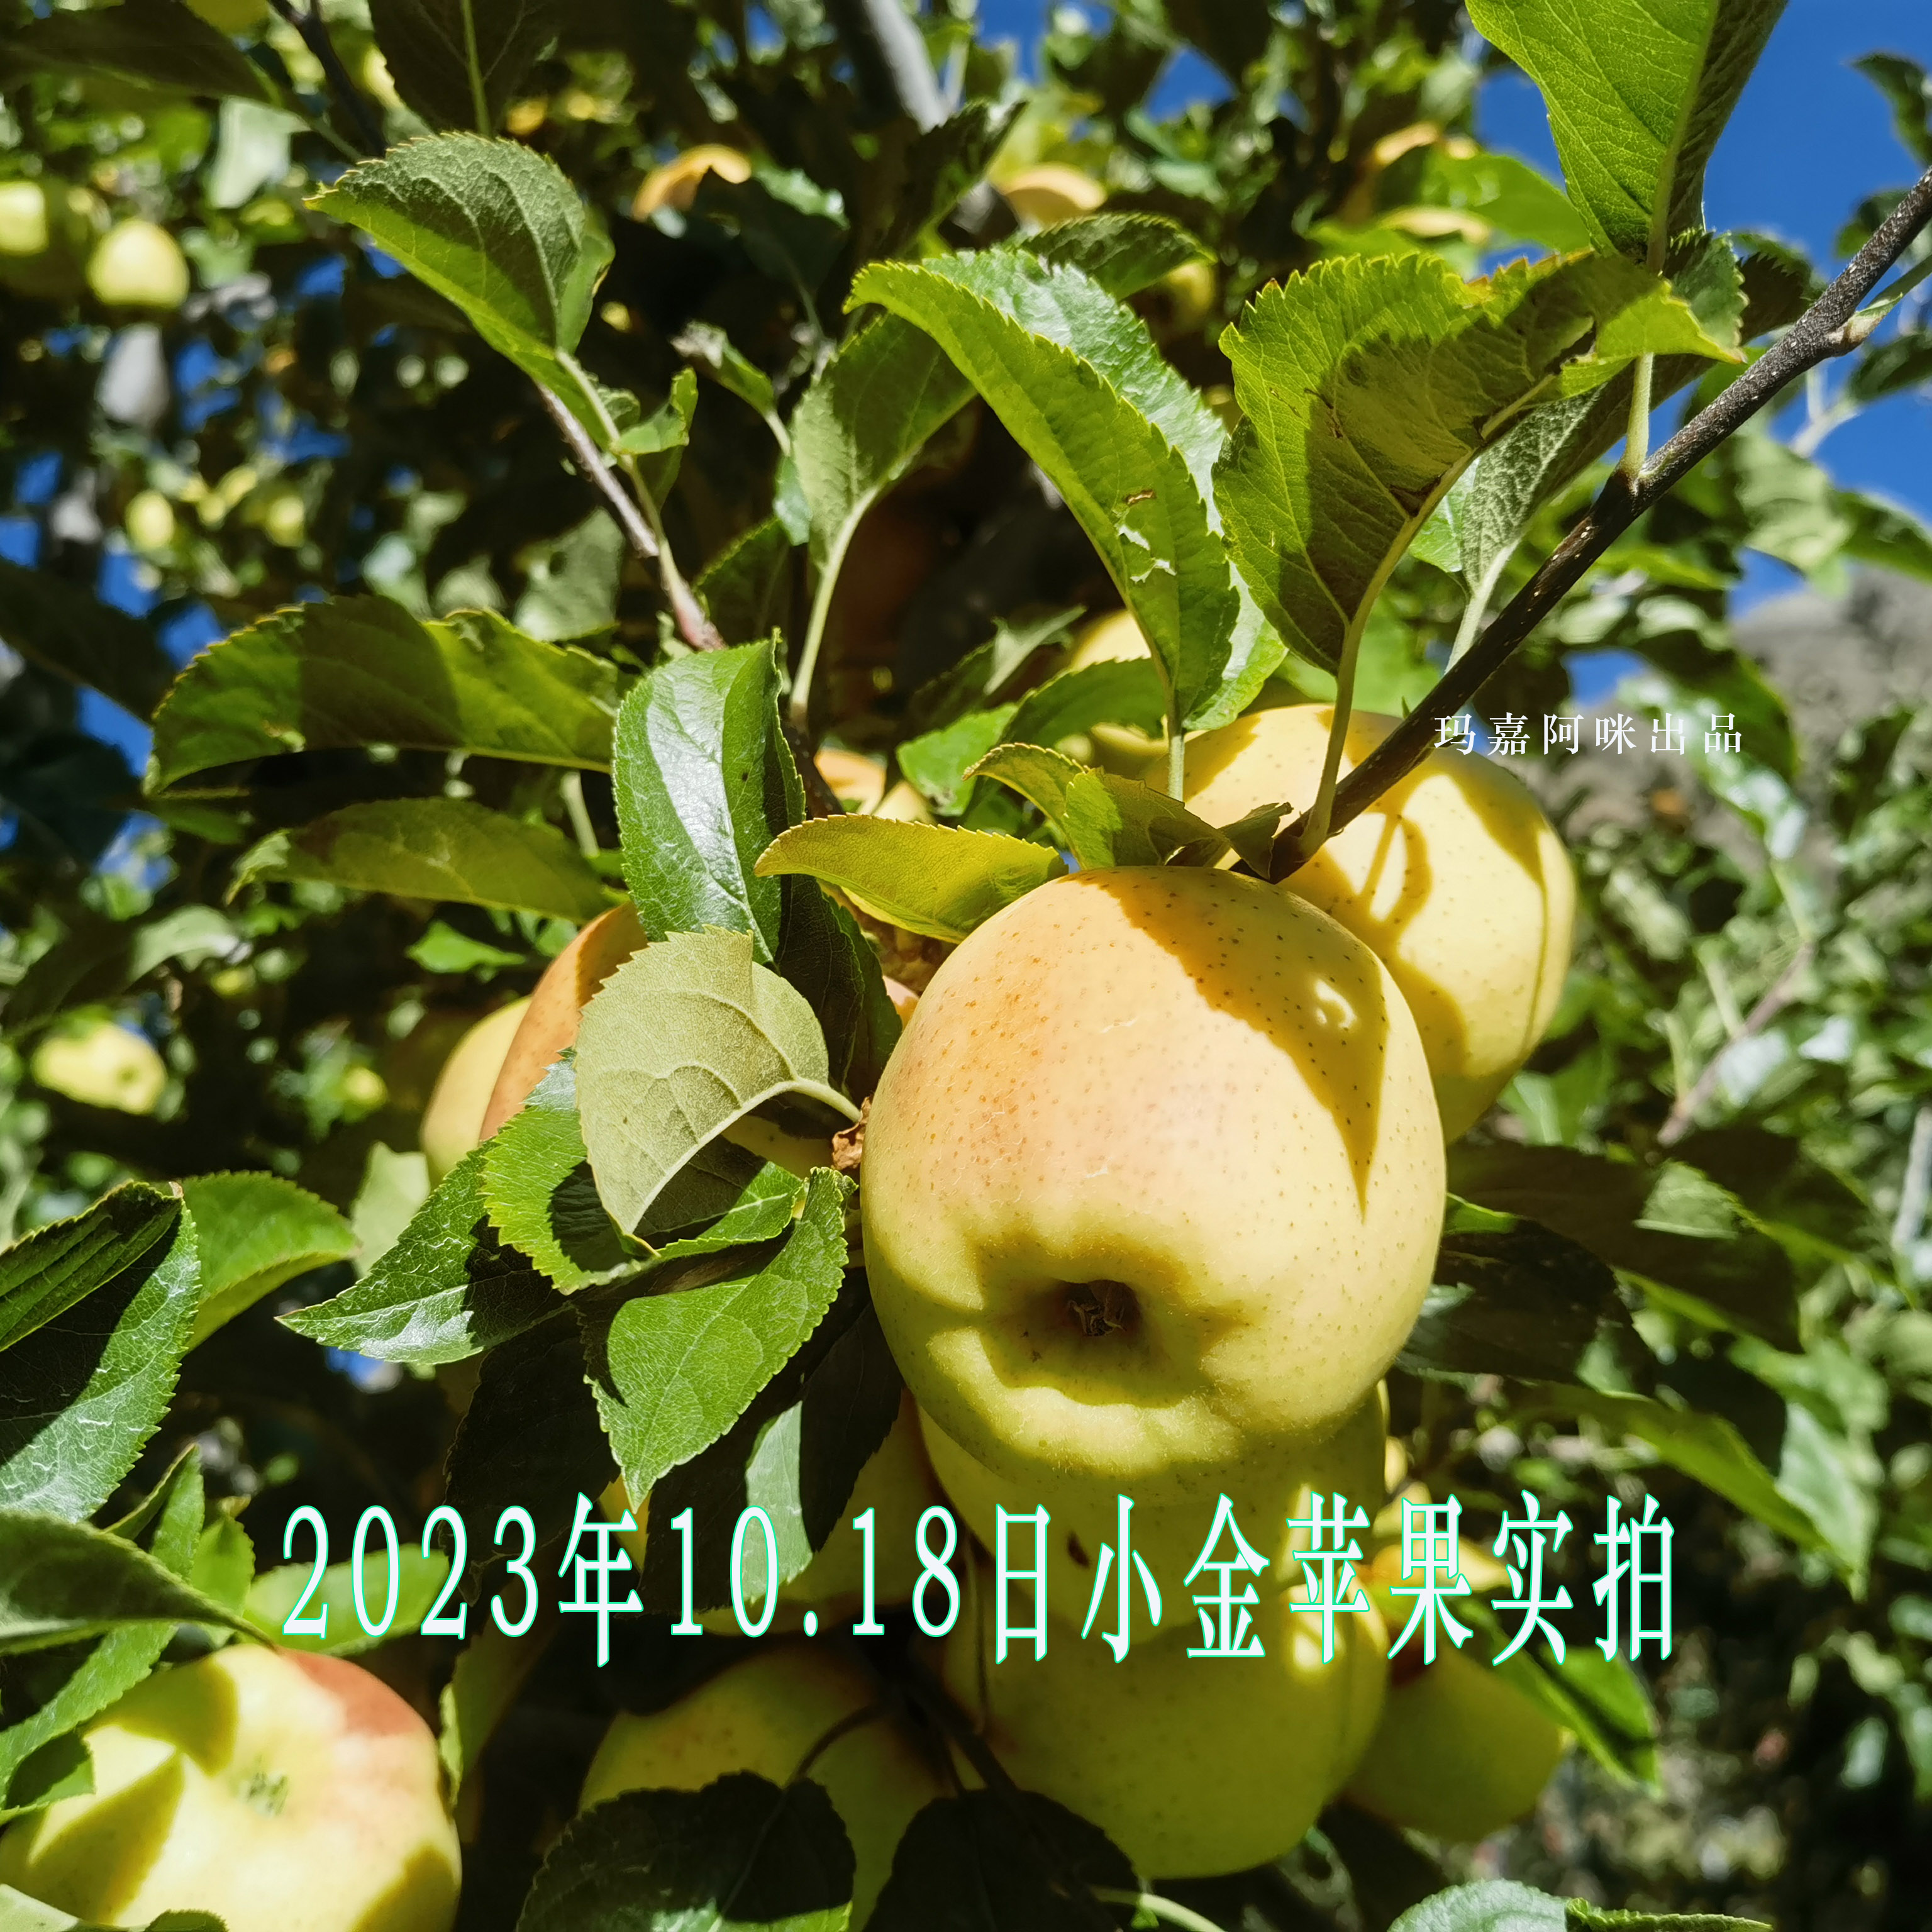 包邮 四川阿坝州青苹果高原小金苹果脆甜多汁现摘现发时令水果10斤